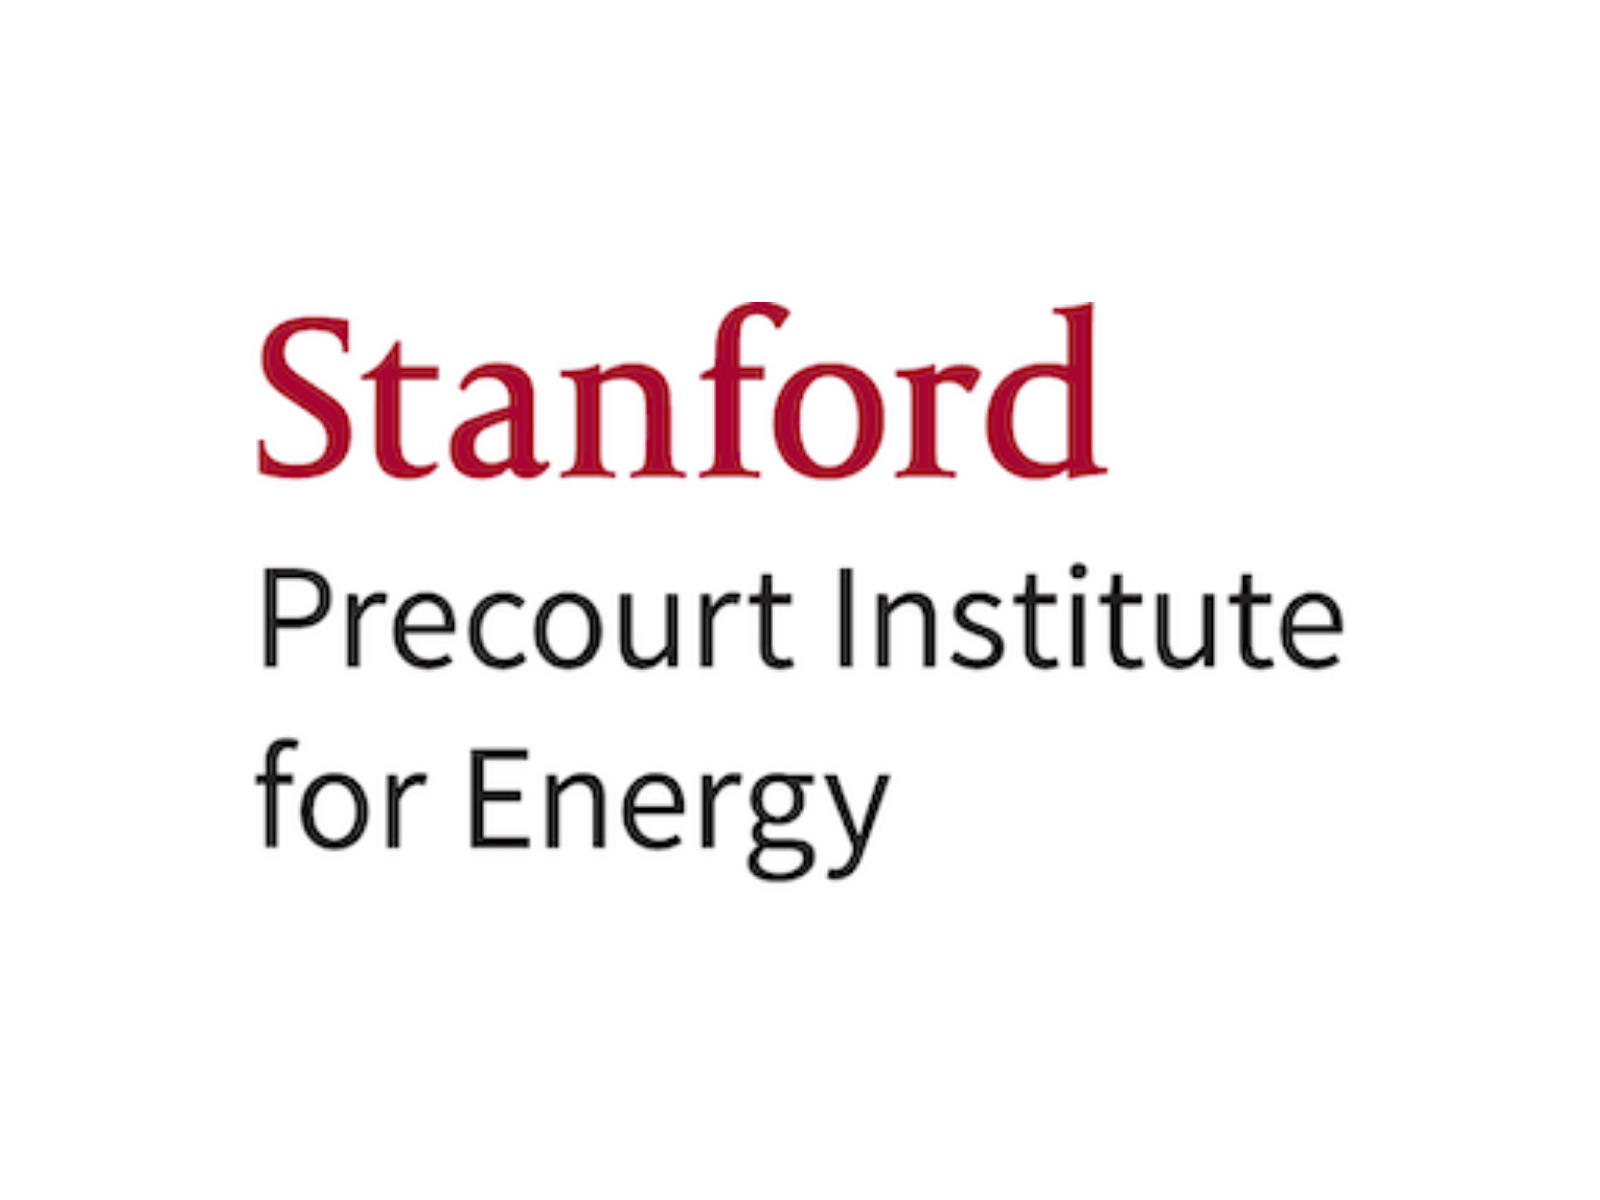 Stanford Precourt Institute for Energy logo.